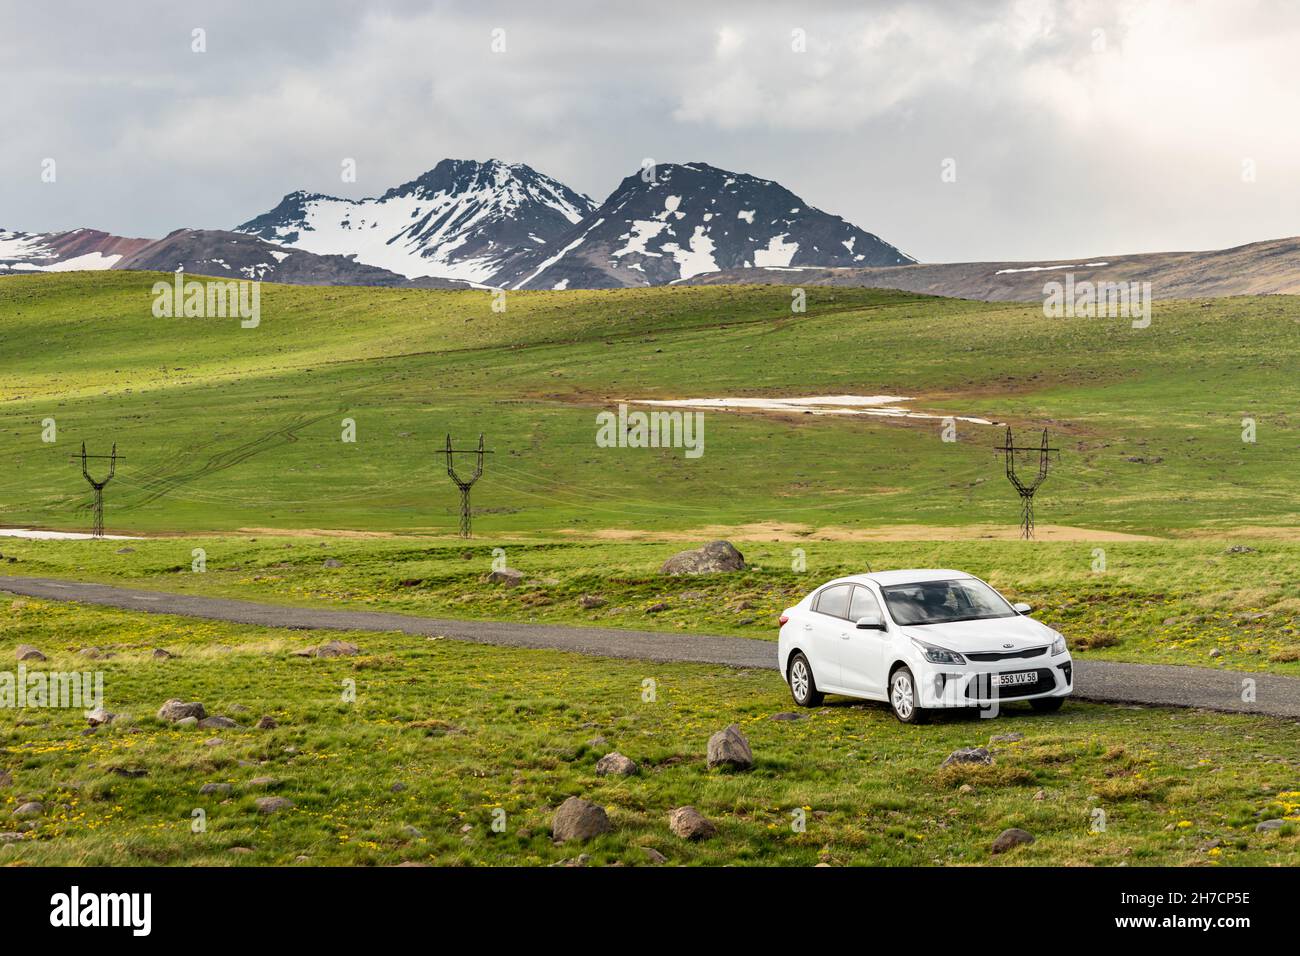 19 de mayo de 2021, Aragats, Armenia: El coche blanco de kia río está estacionado por una carretera estrecha que conduce al Monte Aragats entre prados pintorescos a principios de la primavera Foto de stock